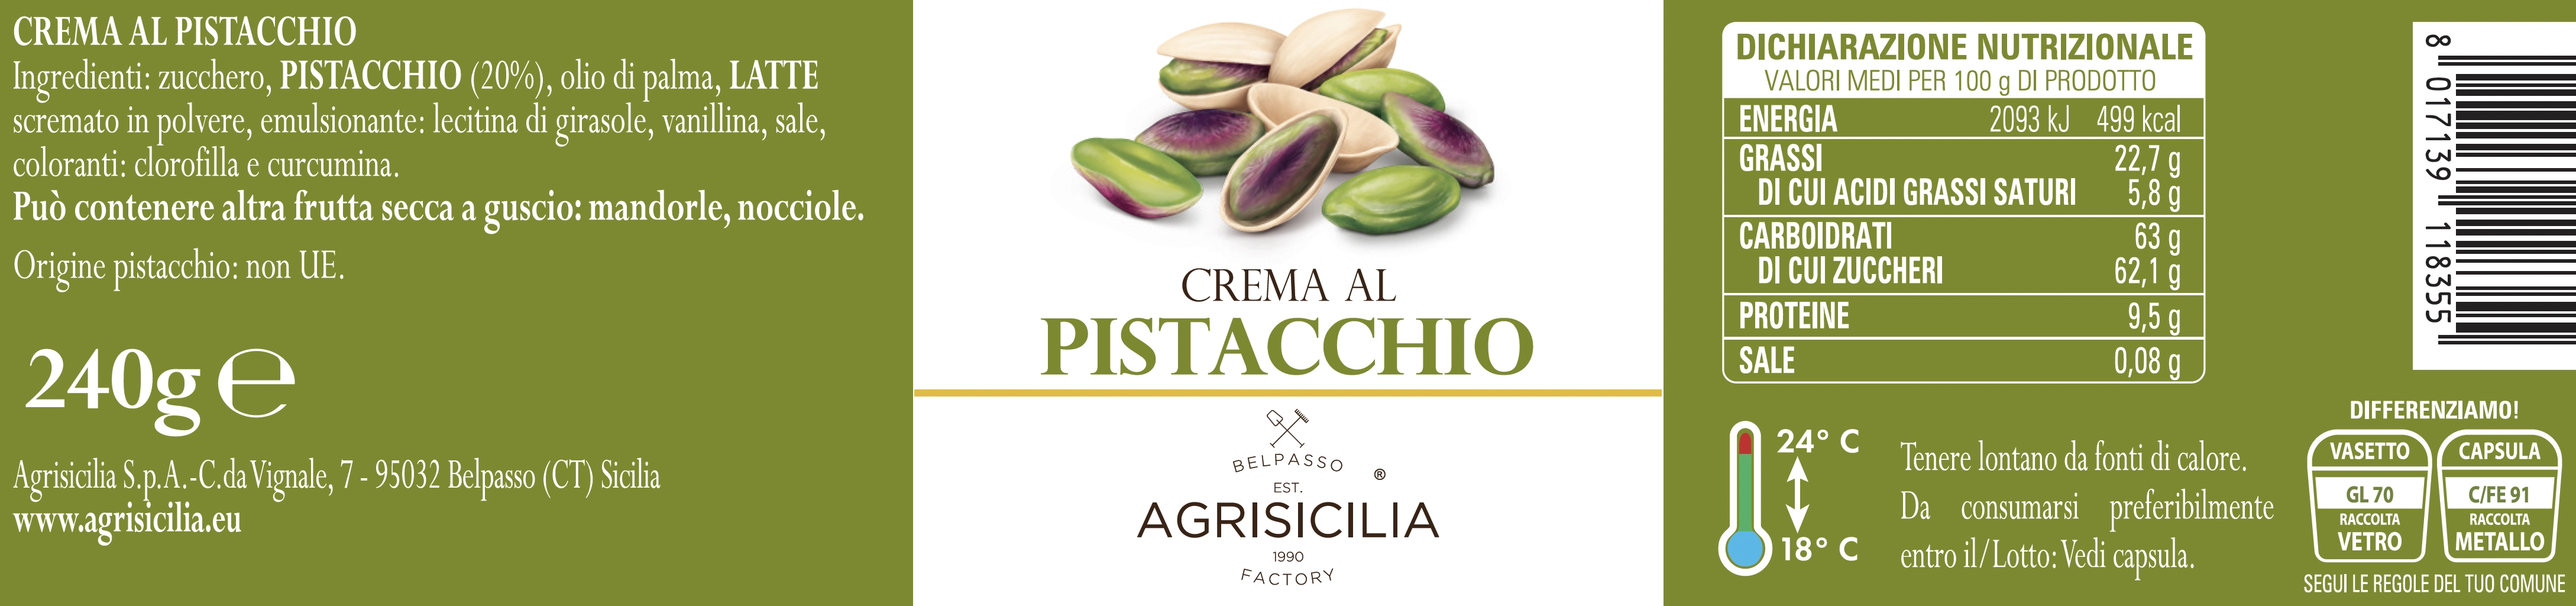 Creme Al Pistacchio Agrisicilia